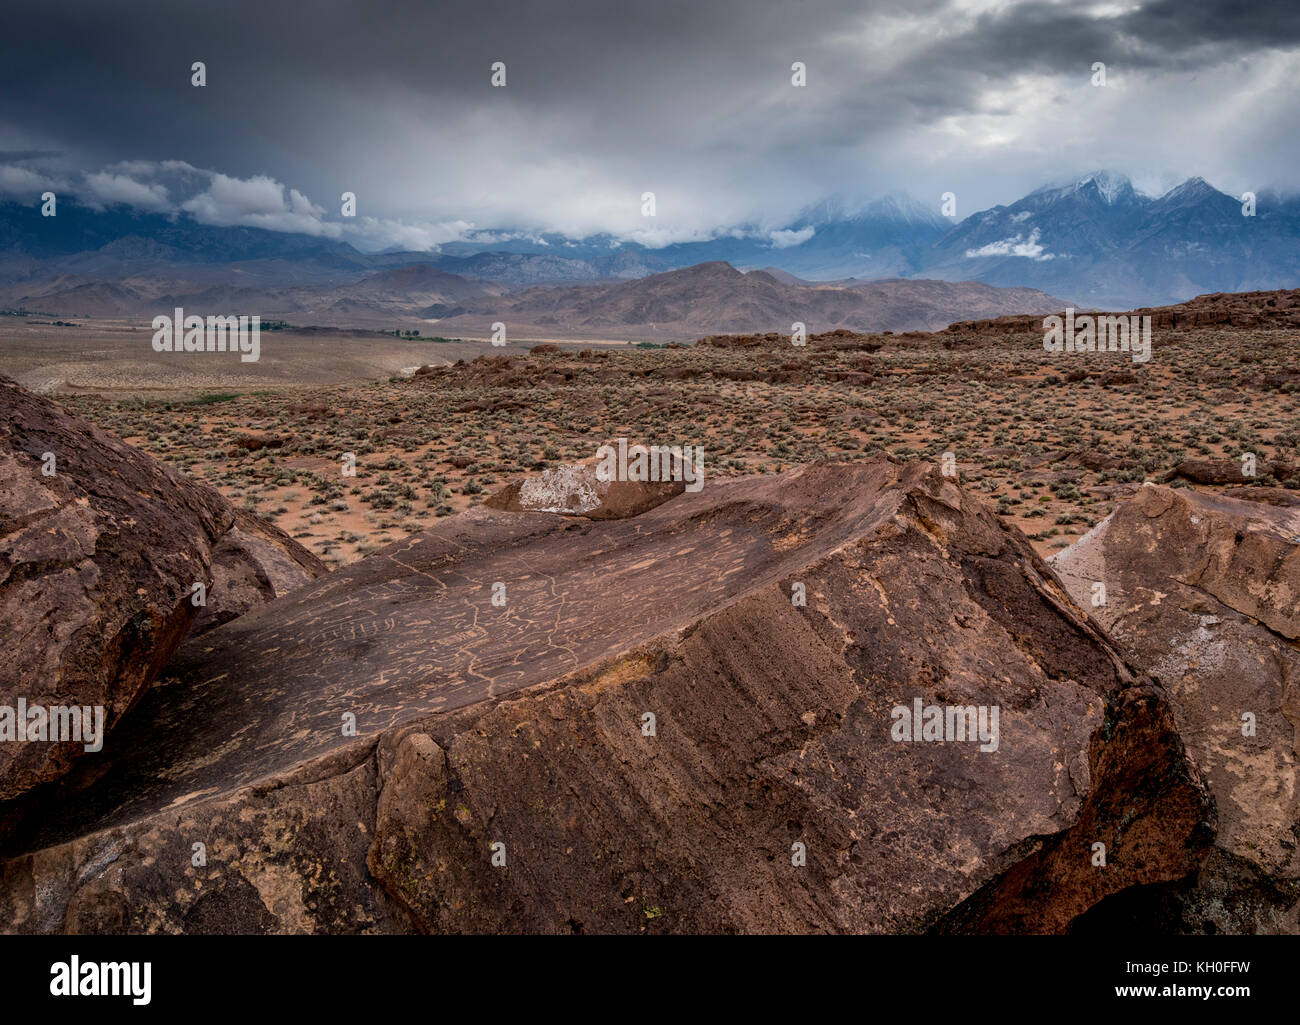 Sky Rock, un ciel face à série de pétroglyphes laissés par les Indiens Paiute-Shoshone il y a des milliers d'années, est assis devant les montagnes de la Sierra Nevada. Banque D'Images